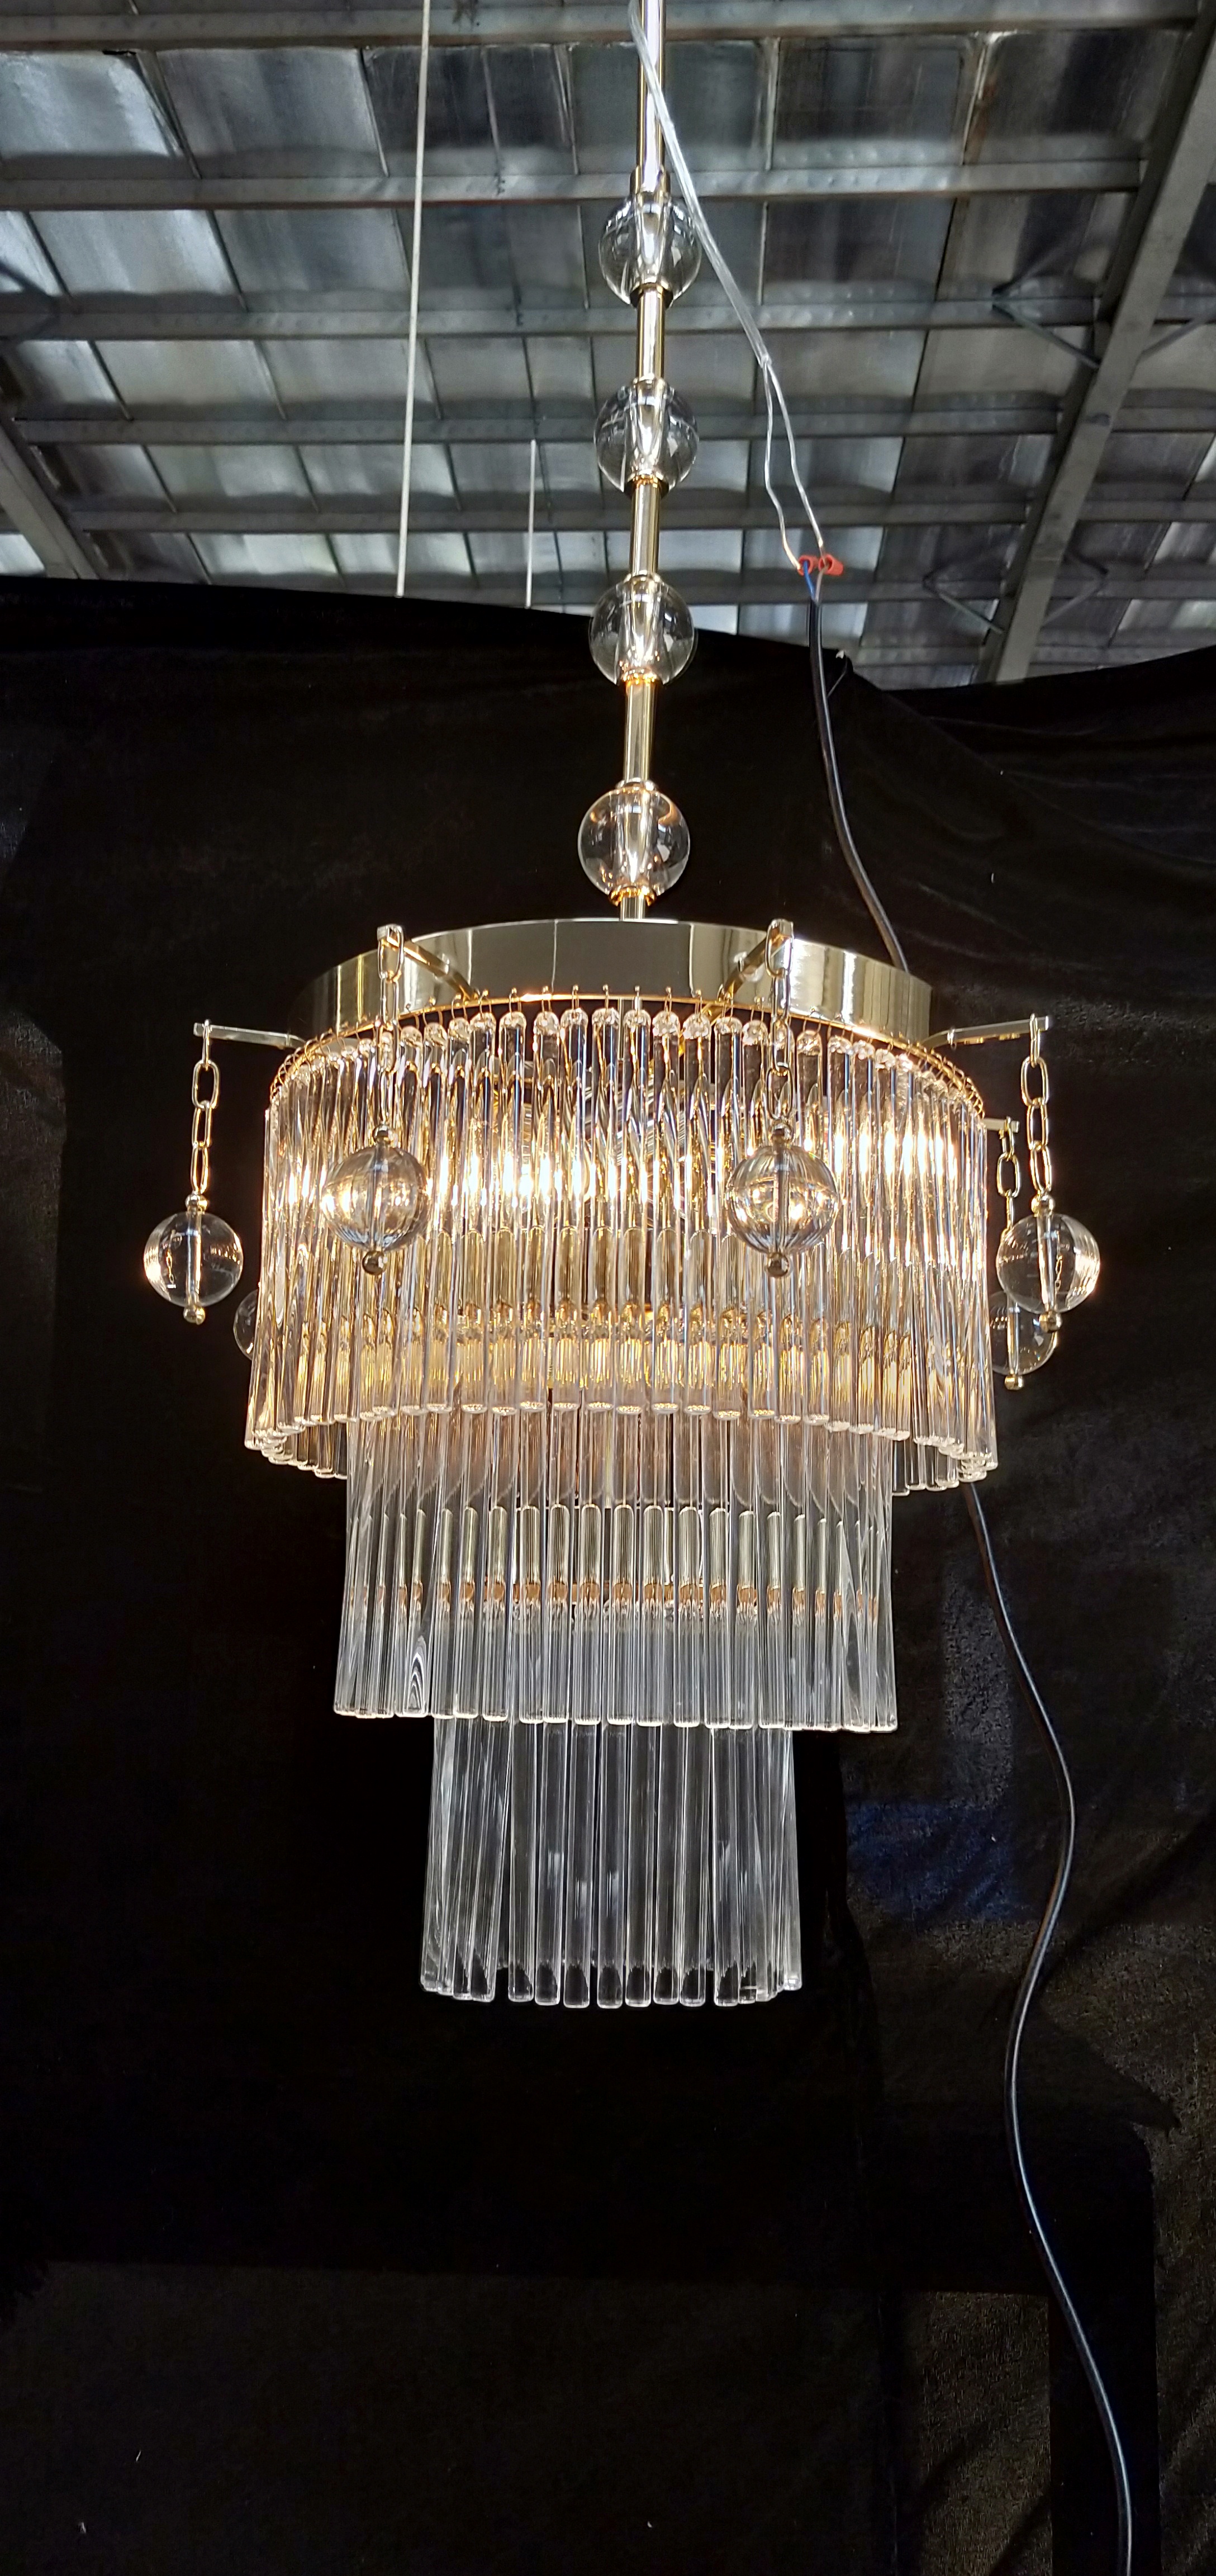 Modern style clear glass poles project chandelier (KA180888)